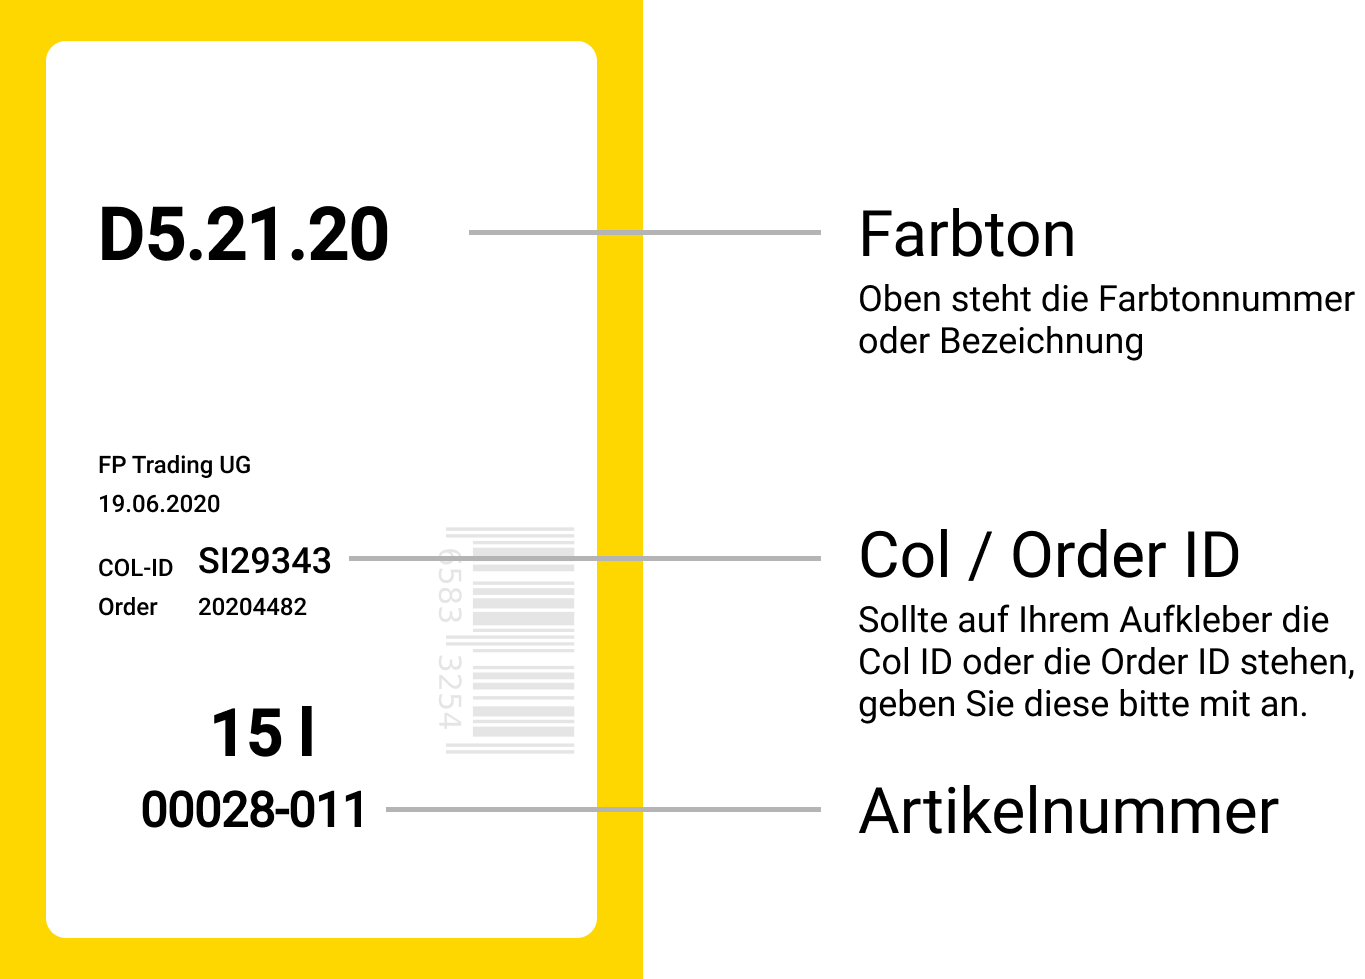 Farblabel; oben fettgedruckt: Farbtonnummer, zB. D5.21.20; mittig Col ID oder Order ID, zB. SI29343; unten Artikelnummer, zB 00028-011